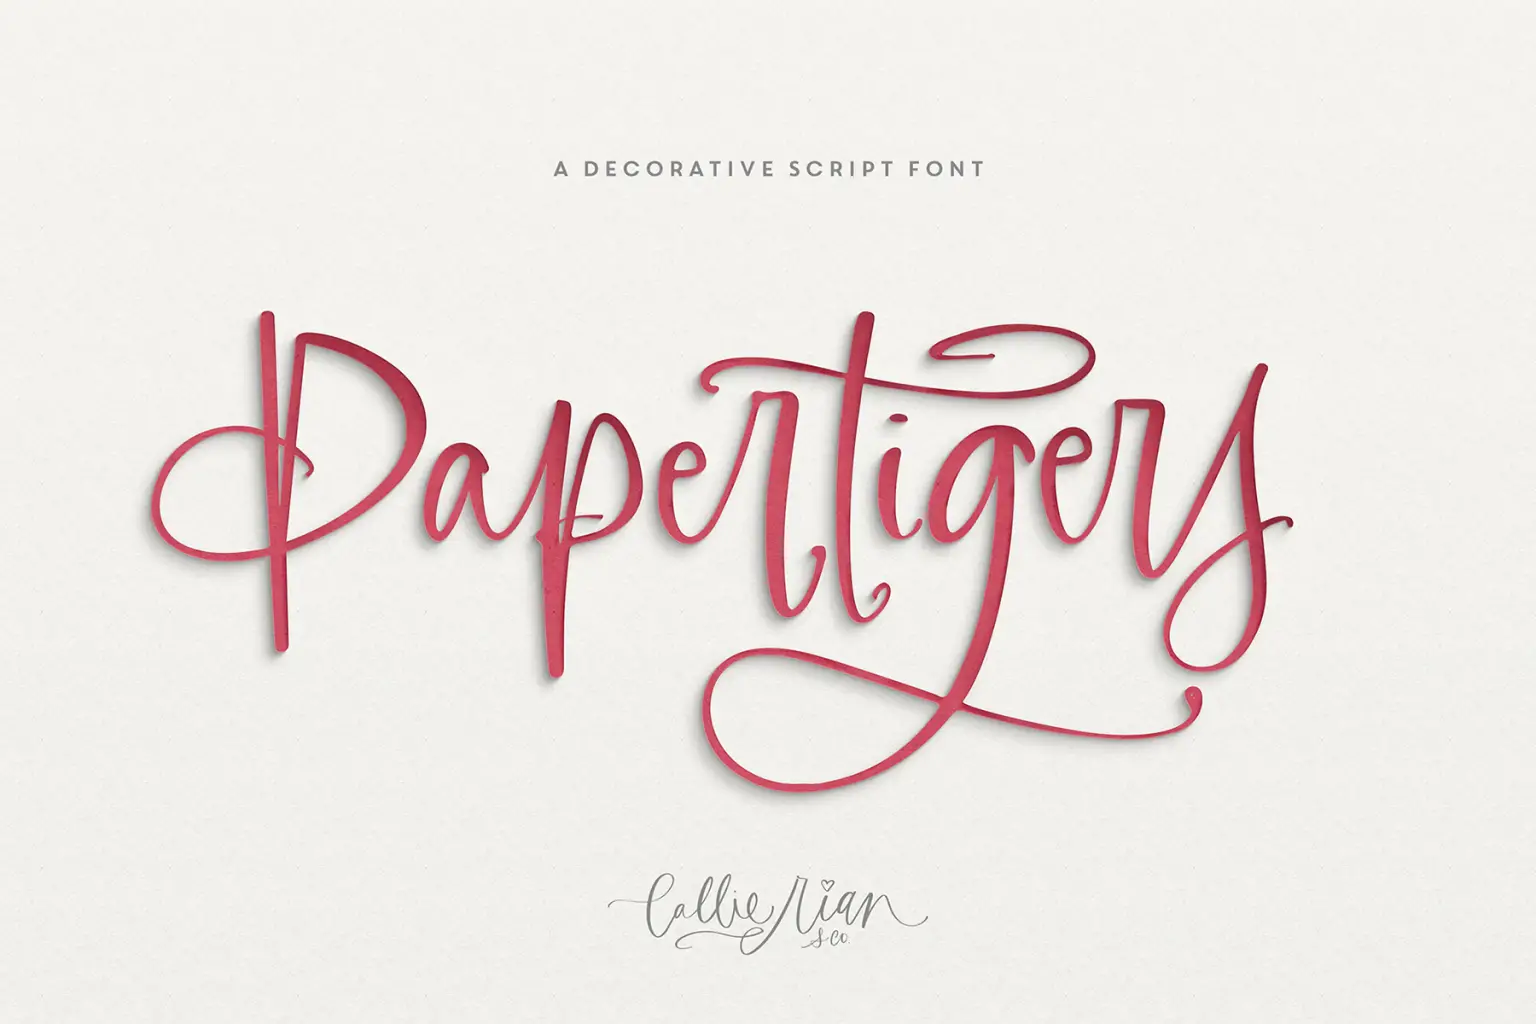 Paper Tigers Script + Floral Elements Wedding Invitation Font